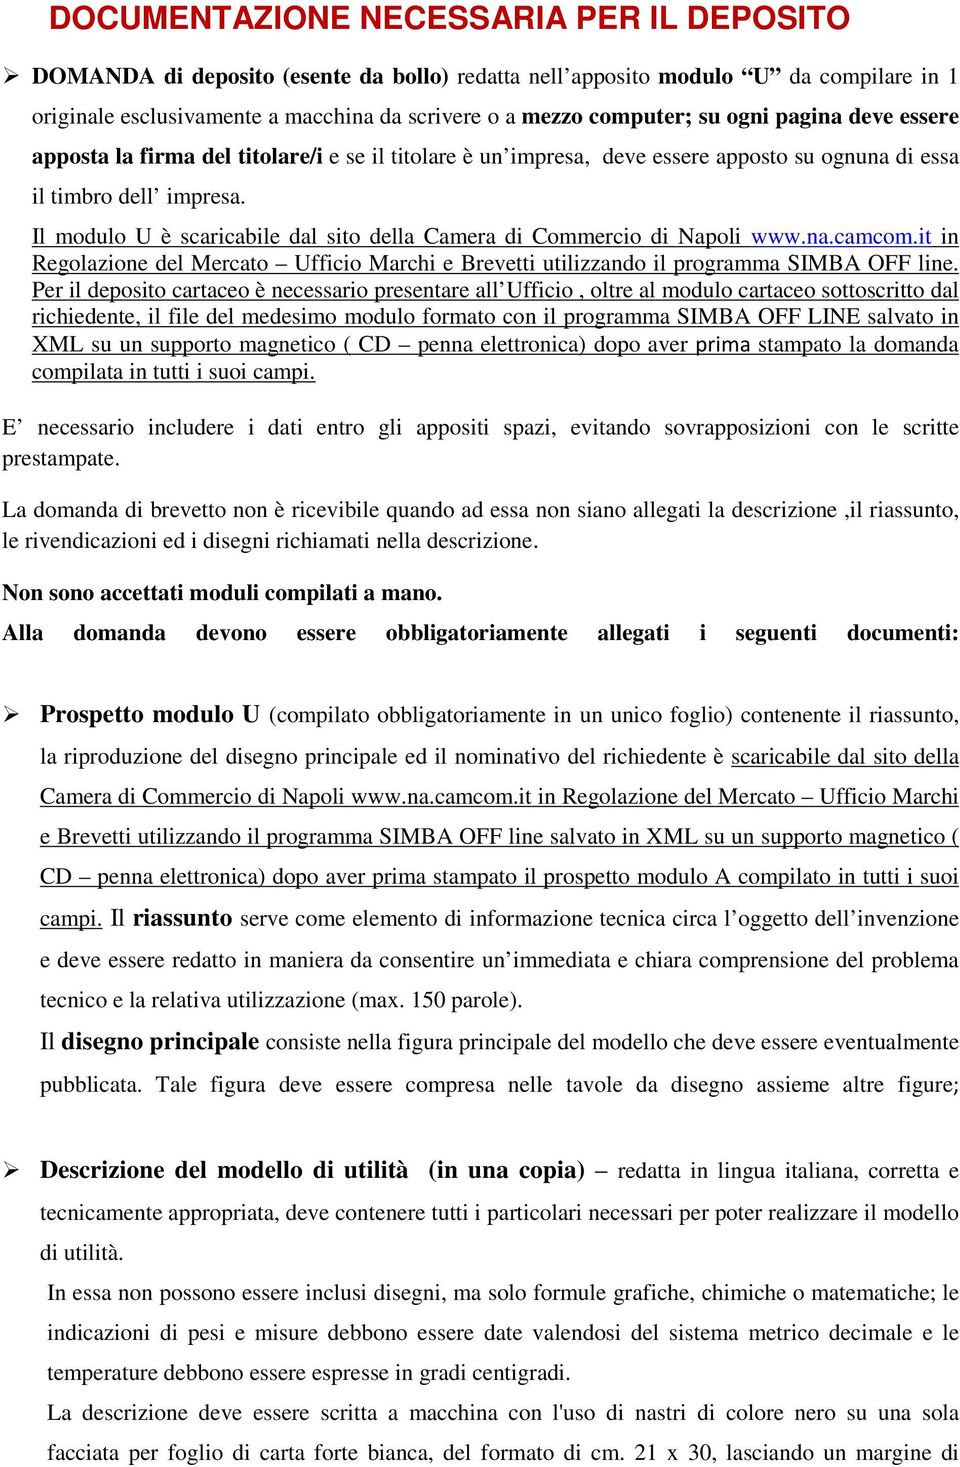 Il modulo U è scaricabile dal sito della Camera di Commercio di Napoli www.na.camcom.it in Regolazione del Mercato Ufficio Marchi e Brevetti utilizzando il programma SIMBA OFF line.